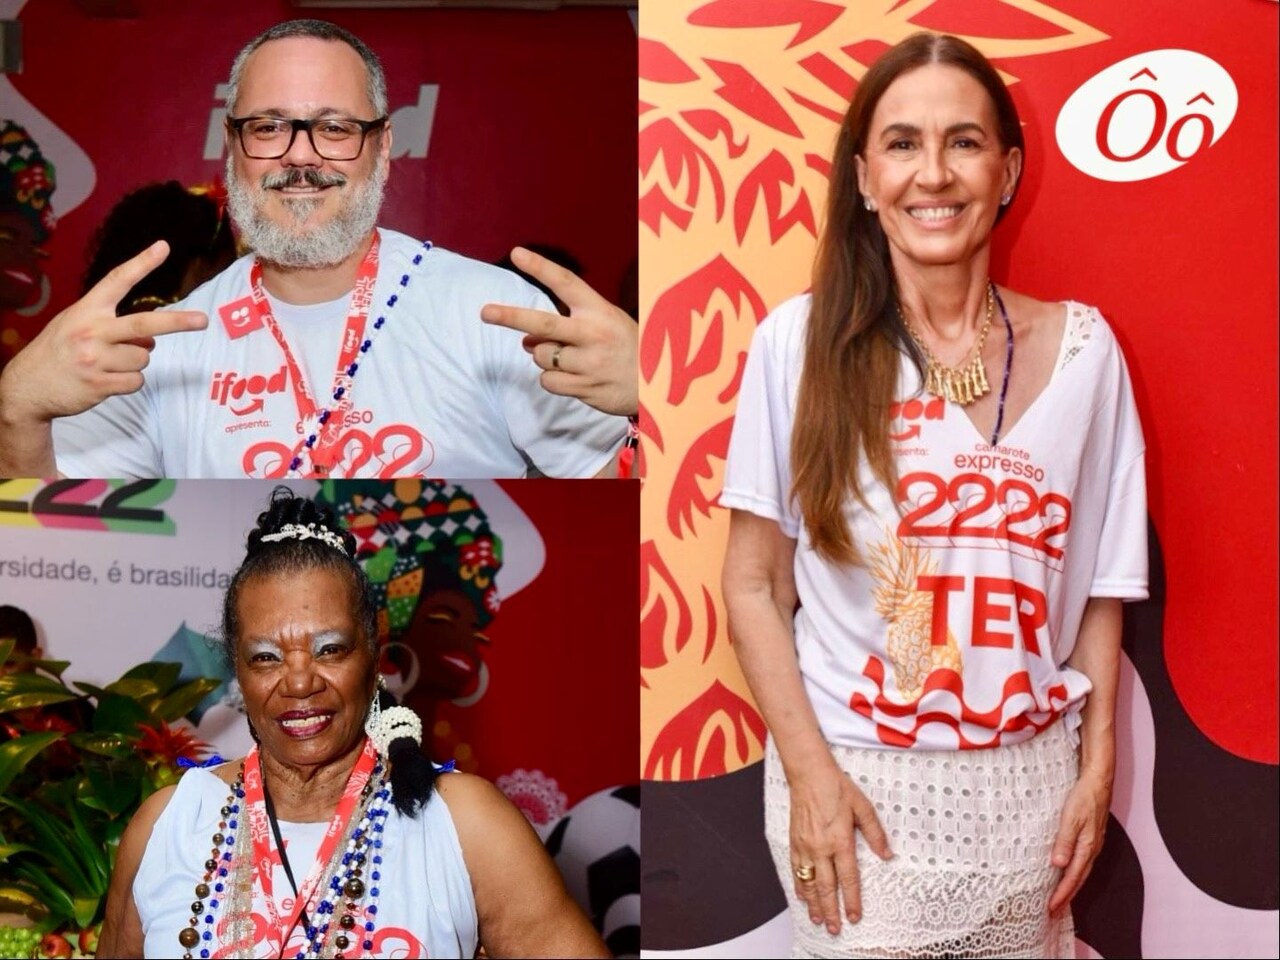 Giro de fotos: ​confira quem curtiu o último dia de Carnaval no Expresso 2222